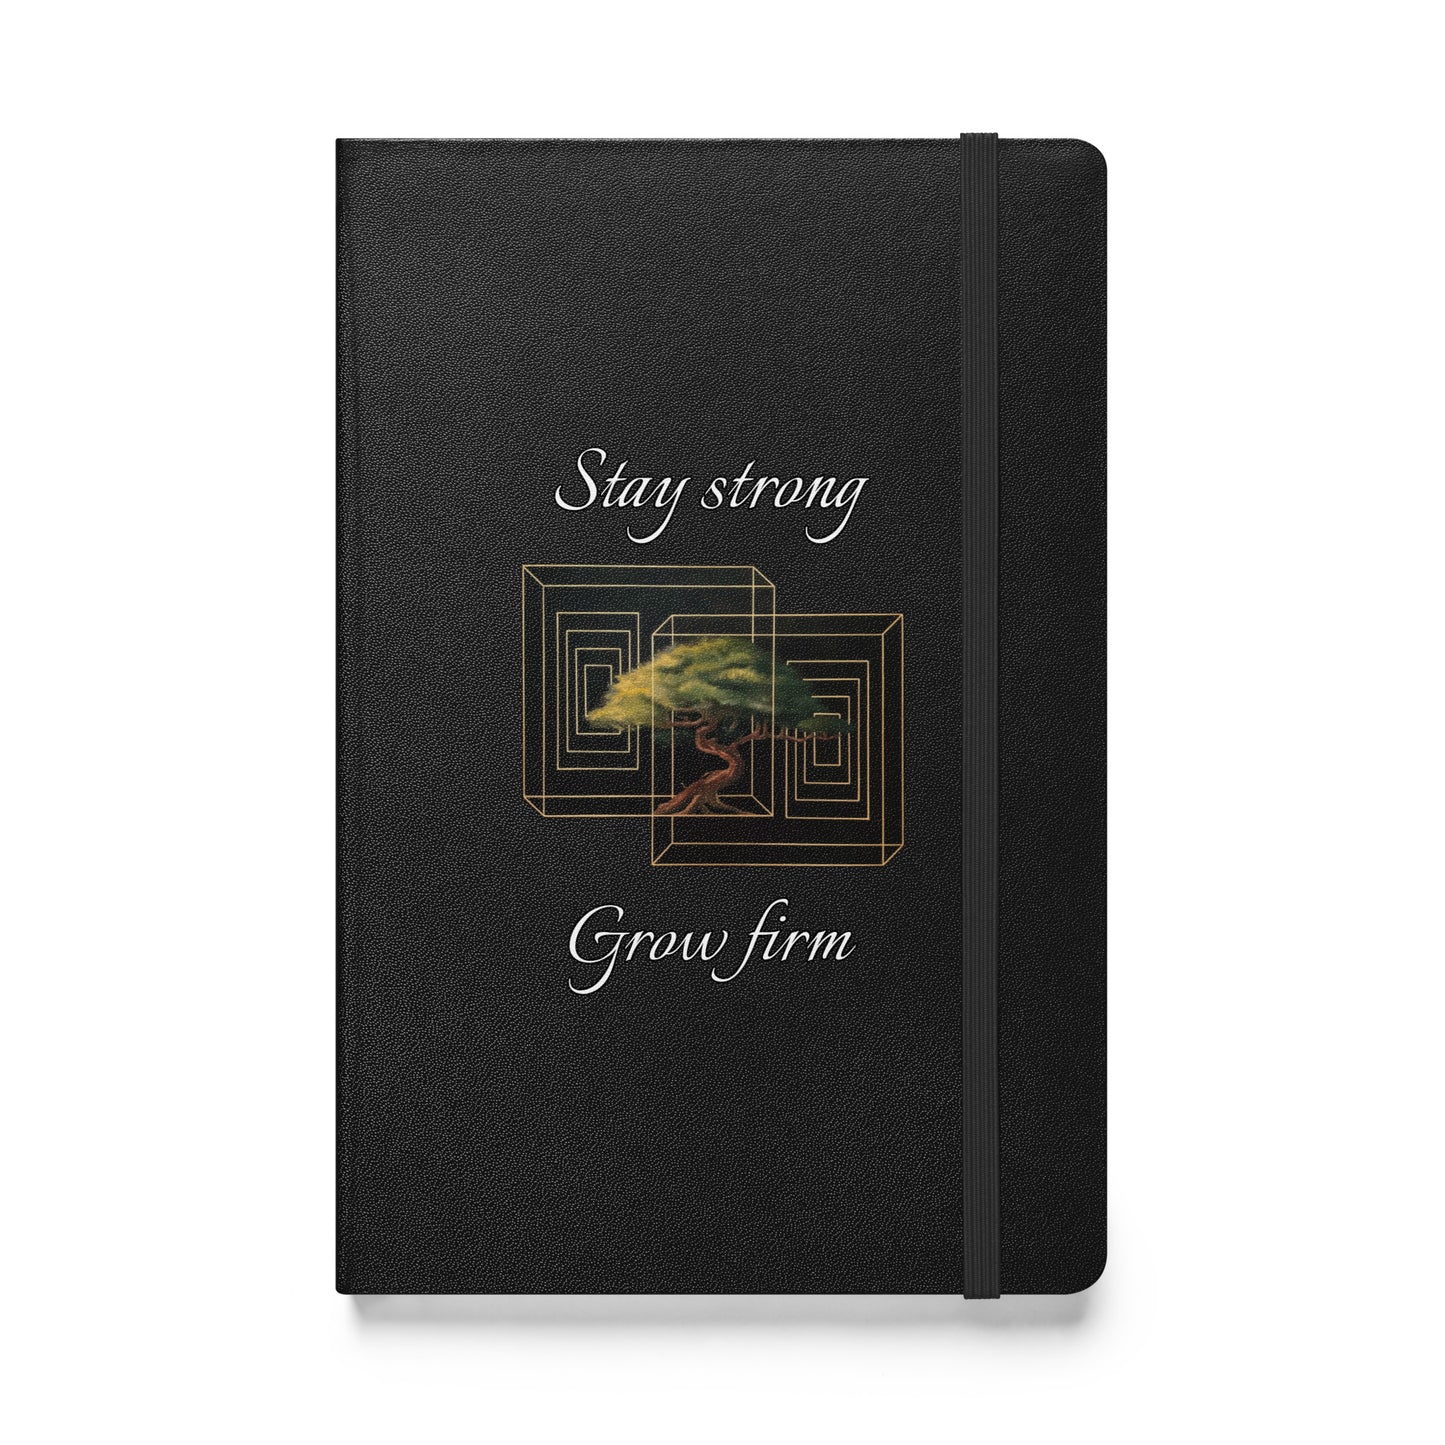 "Mantenerte fuerte. Crecer firme” - Cuaderno encuadernado en tapa dura